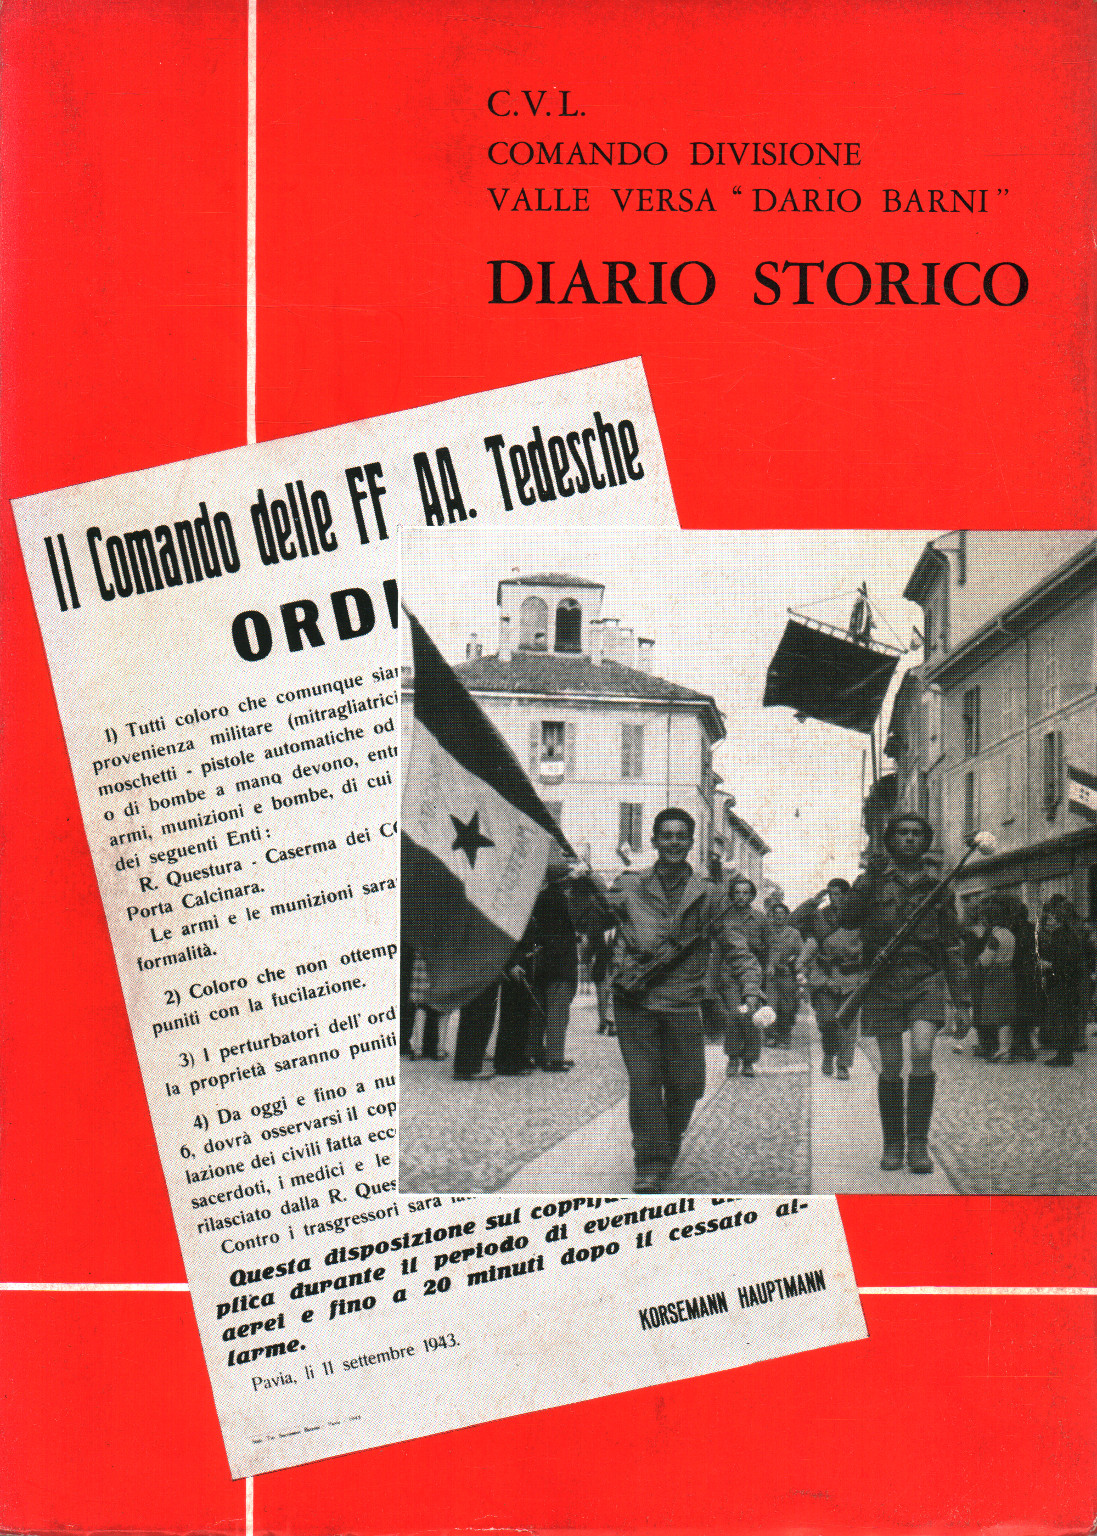 Diario storico, s.a.